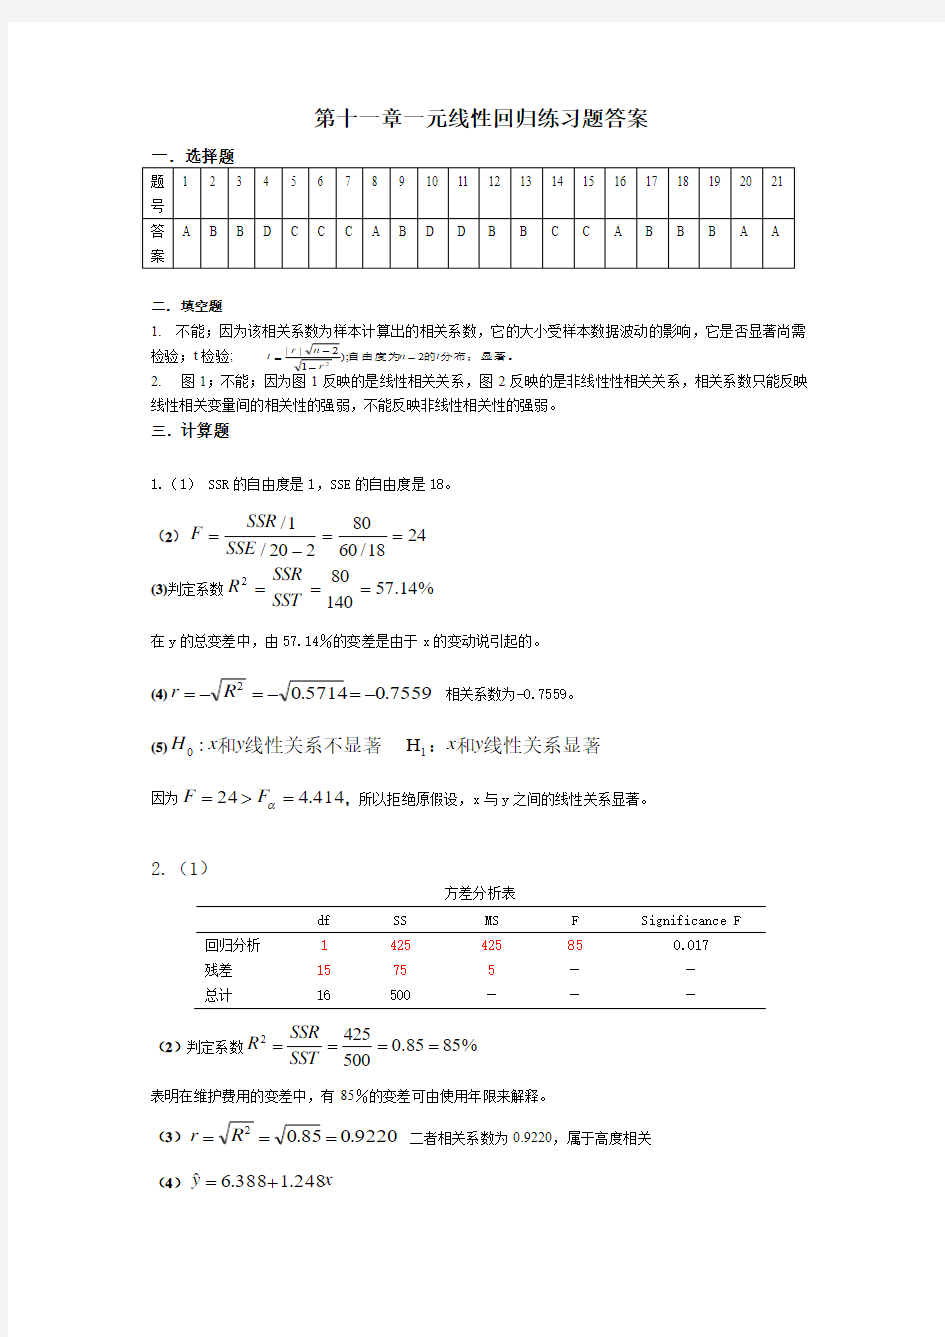 贾俊平第四版统计学-第十一章一元线性回归练习答案